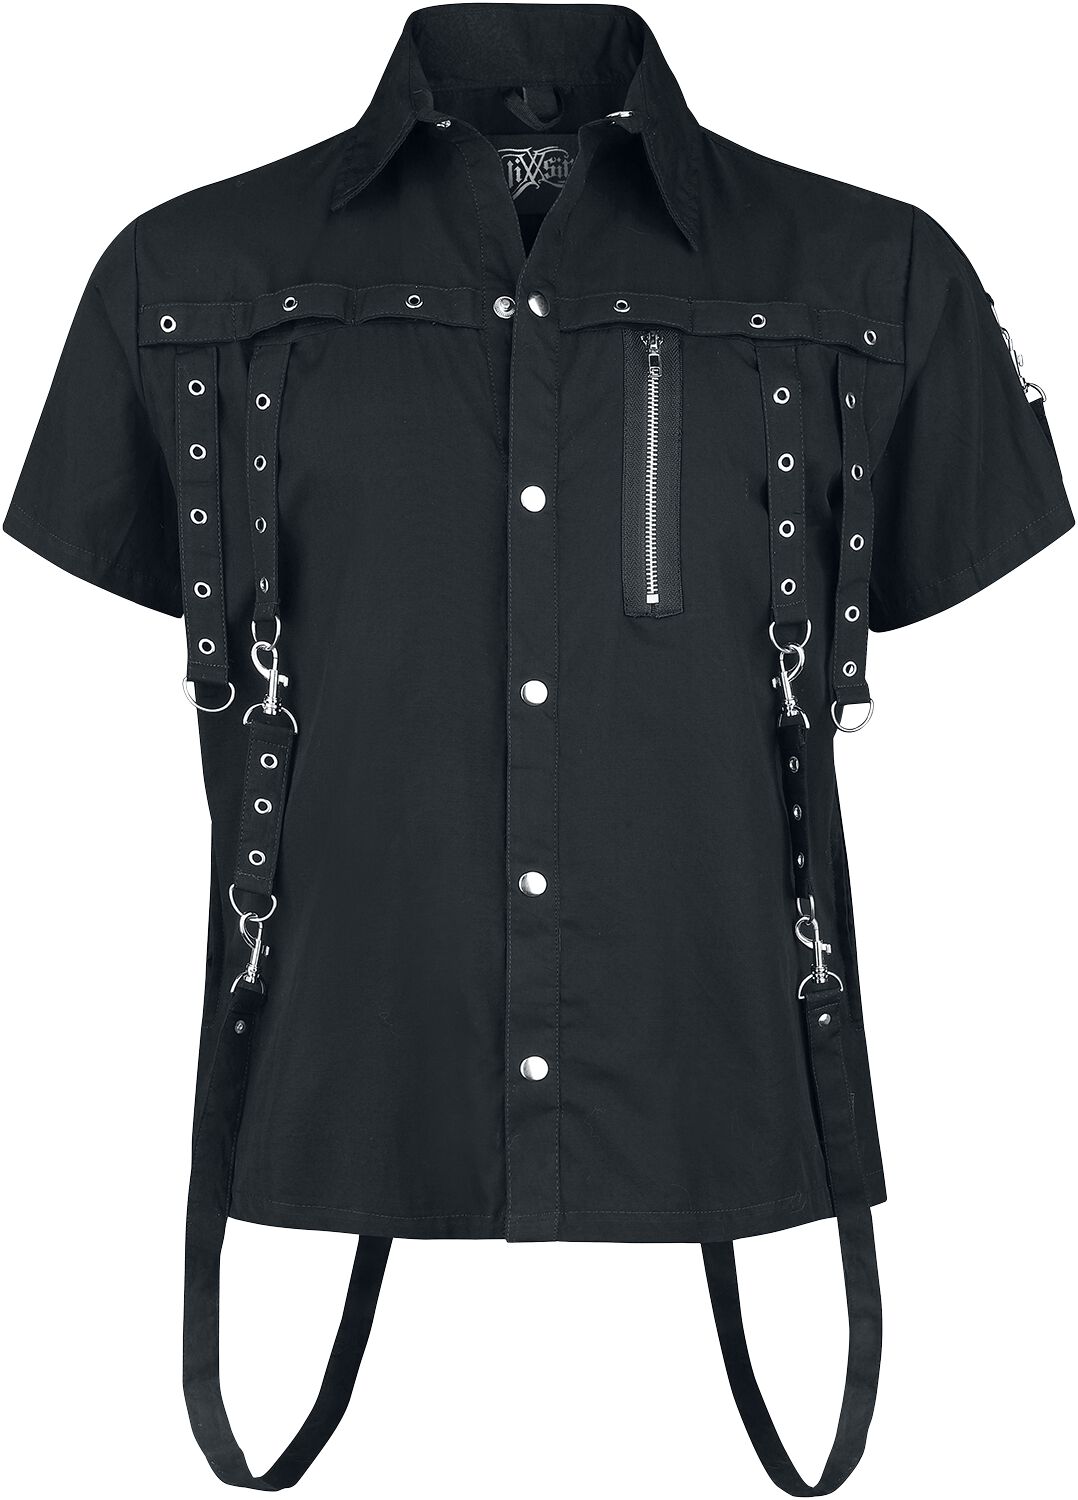 Vixxsin - Gothic Kurzarmhemd - Cassius Shirt - S bis 4XL - für Männer - Größe S - schwarz